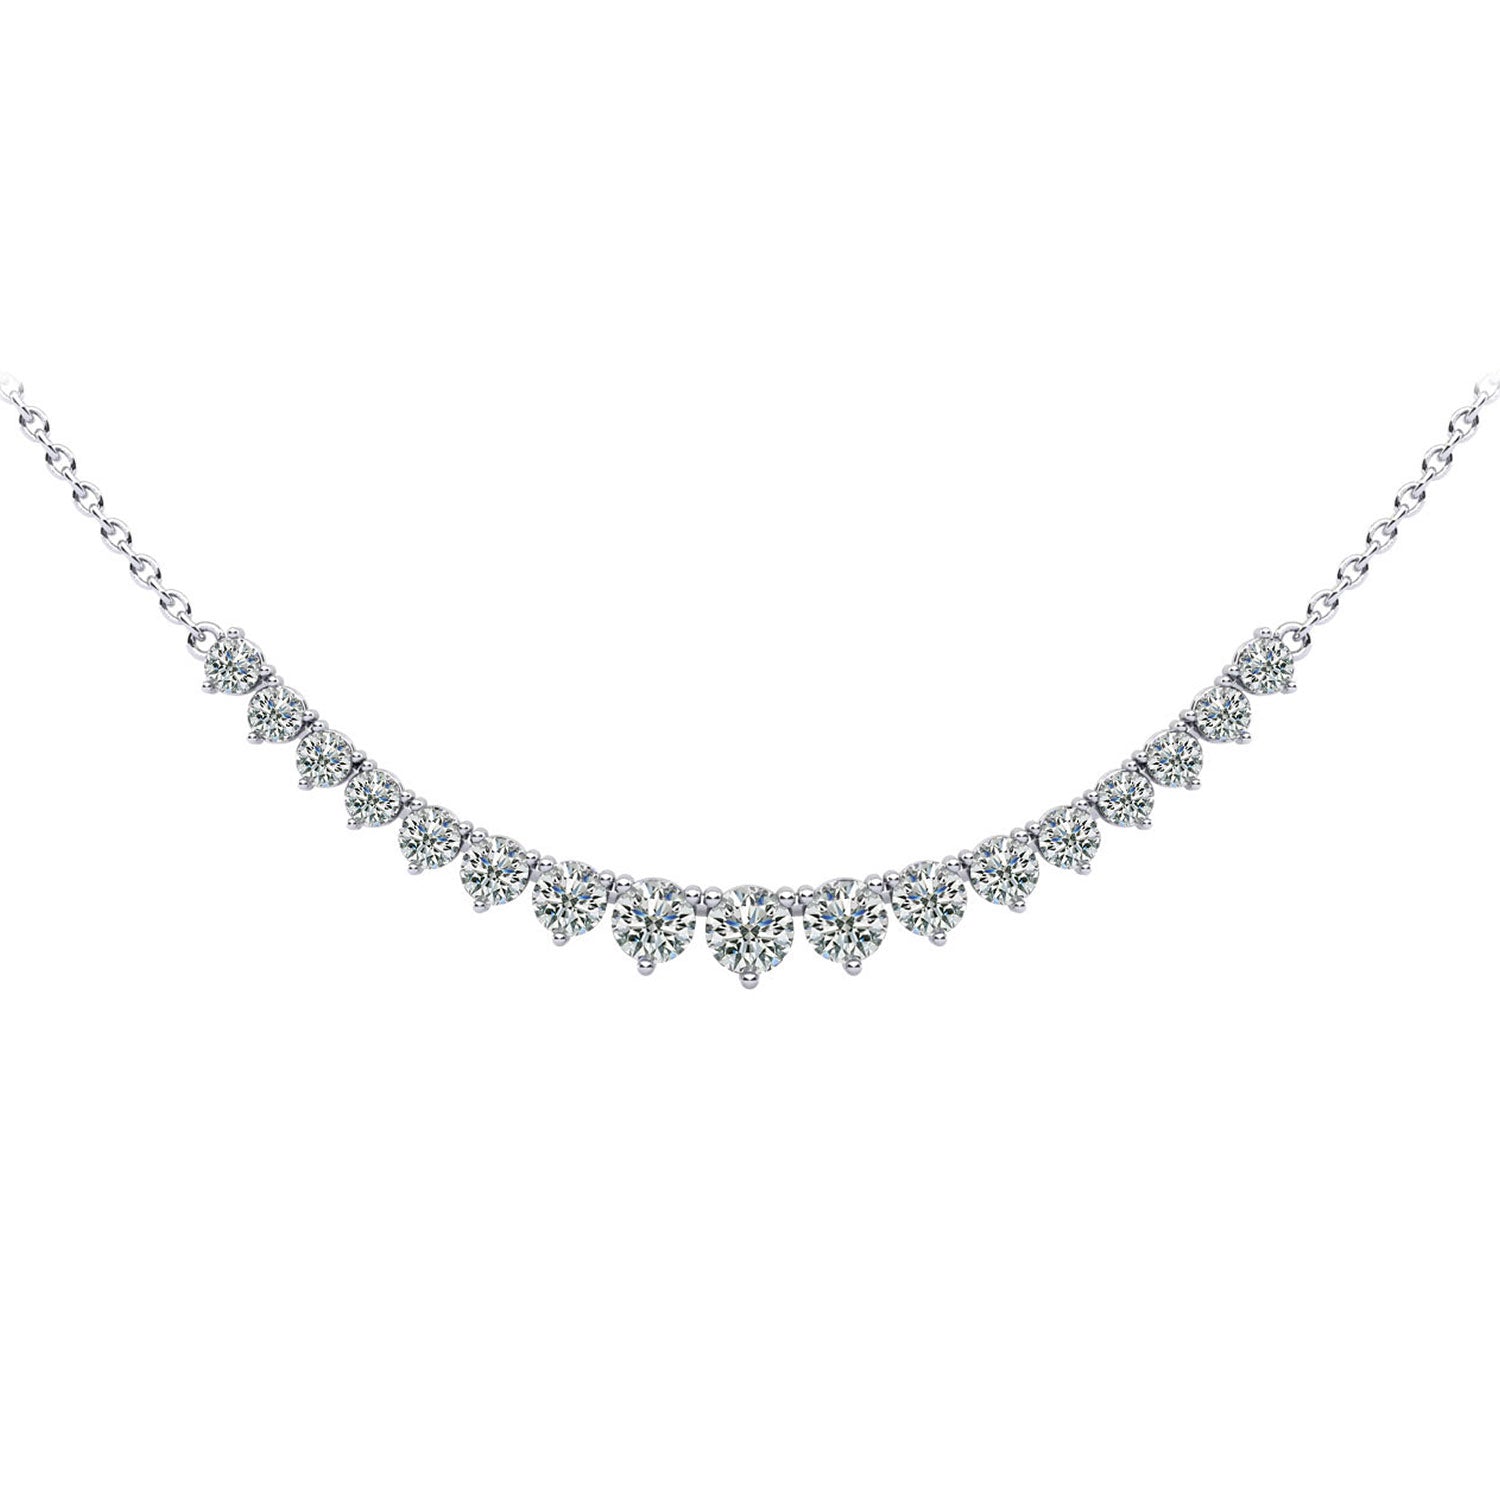 Diamond Row Necklace - 1ct